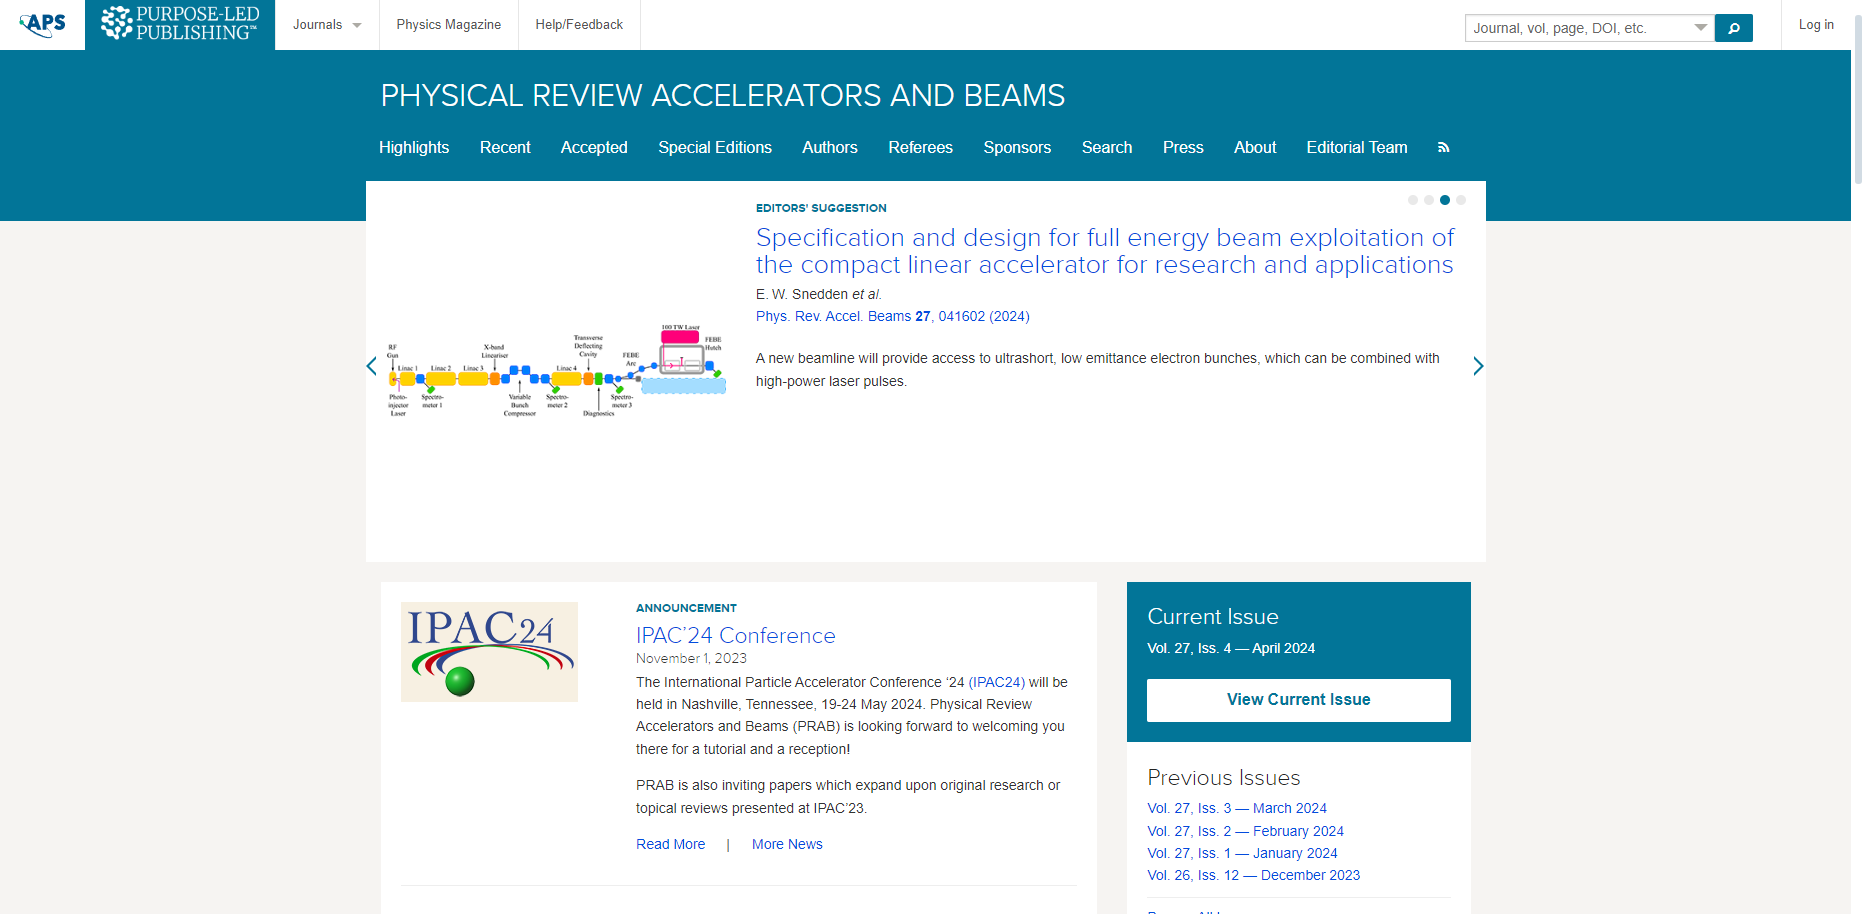 Physical Review Accelerators and Beams (PRAB)